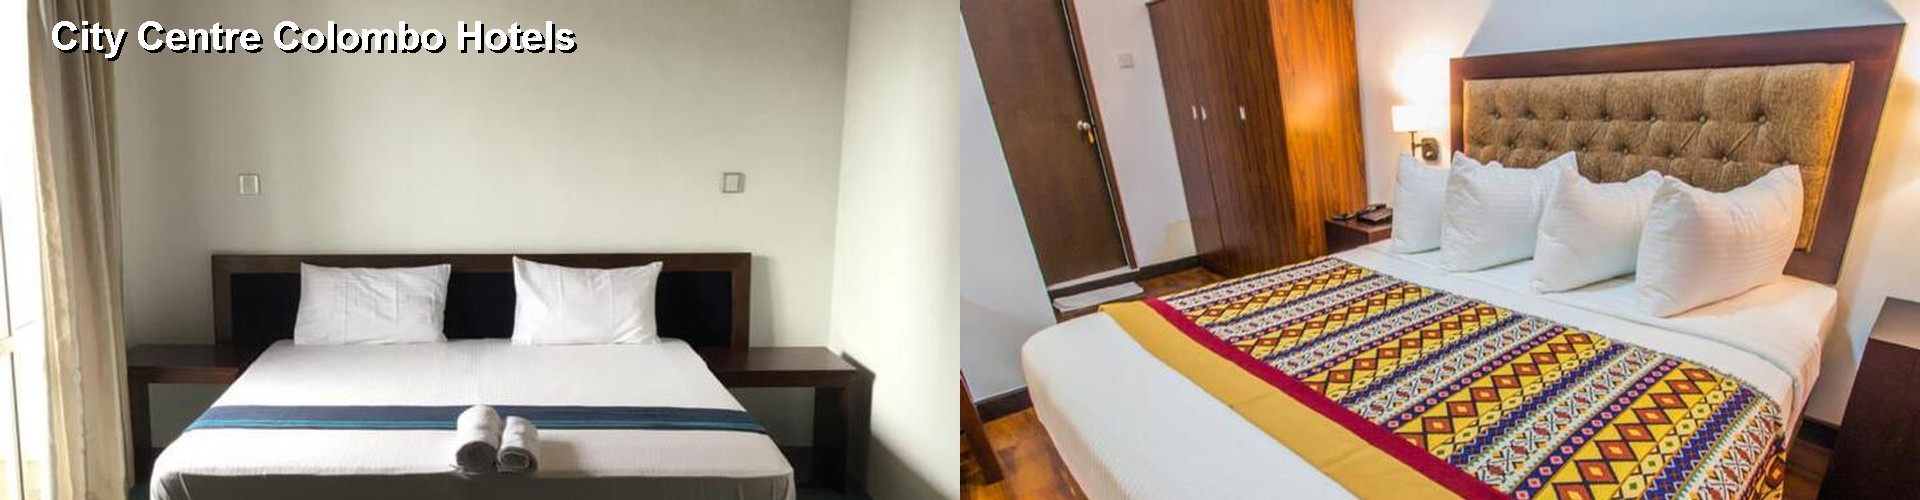 5 Best Hotels near City Centre Colombo